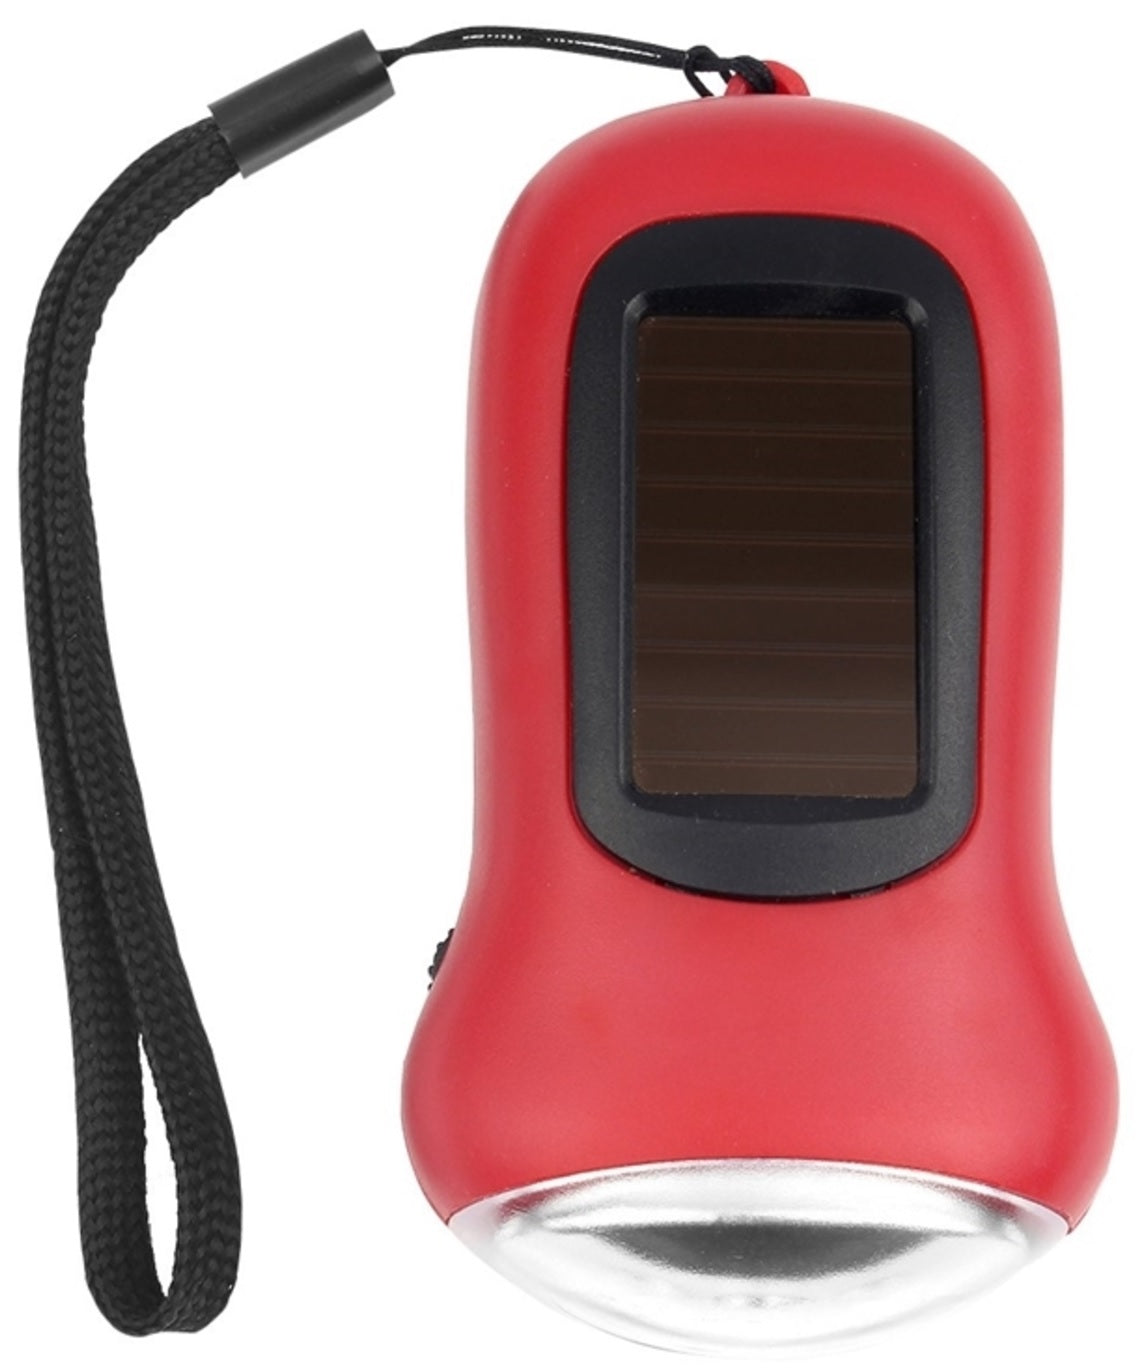 Hy-Ko KC630 2GO Solar LED Crank Flashlight Key Ring